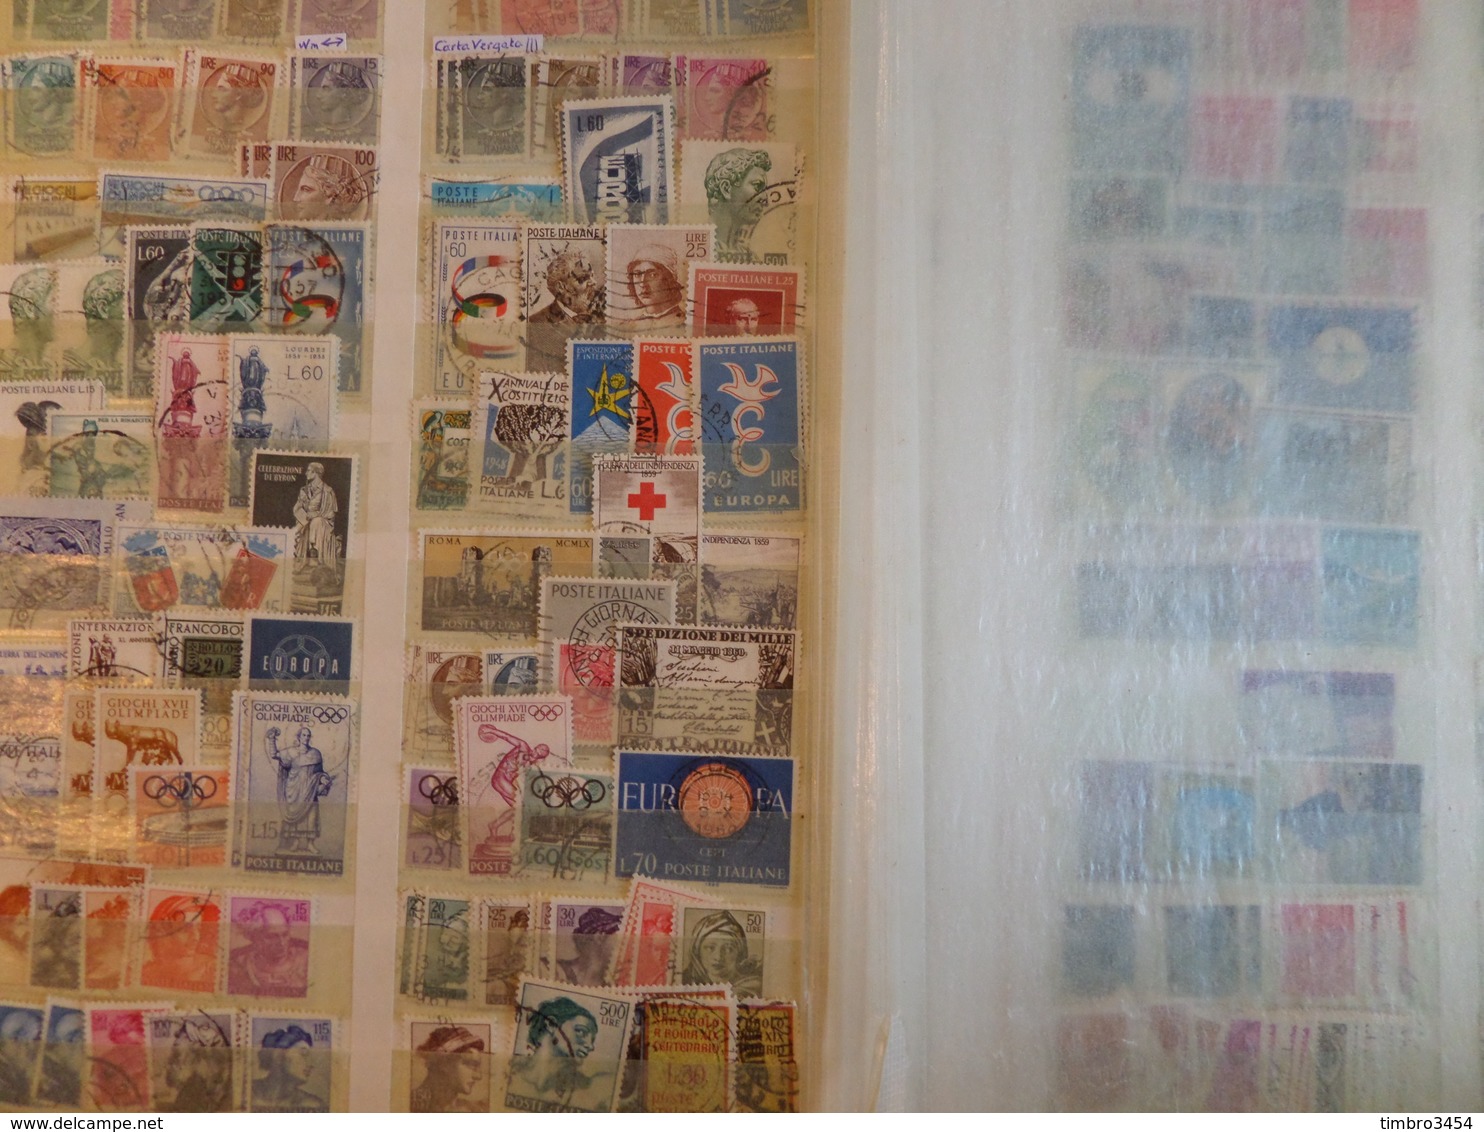 Superbe vrac de milliers de timbres tous pays. Anciens, nombreux pays + bonnes valeurs ! . Cote énorme!!! A saisir!